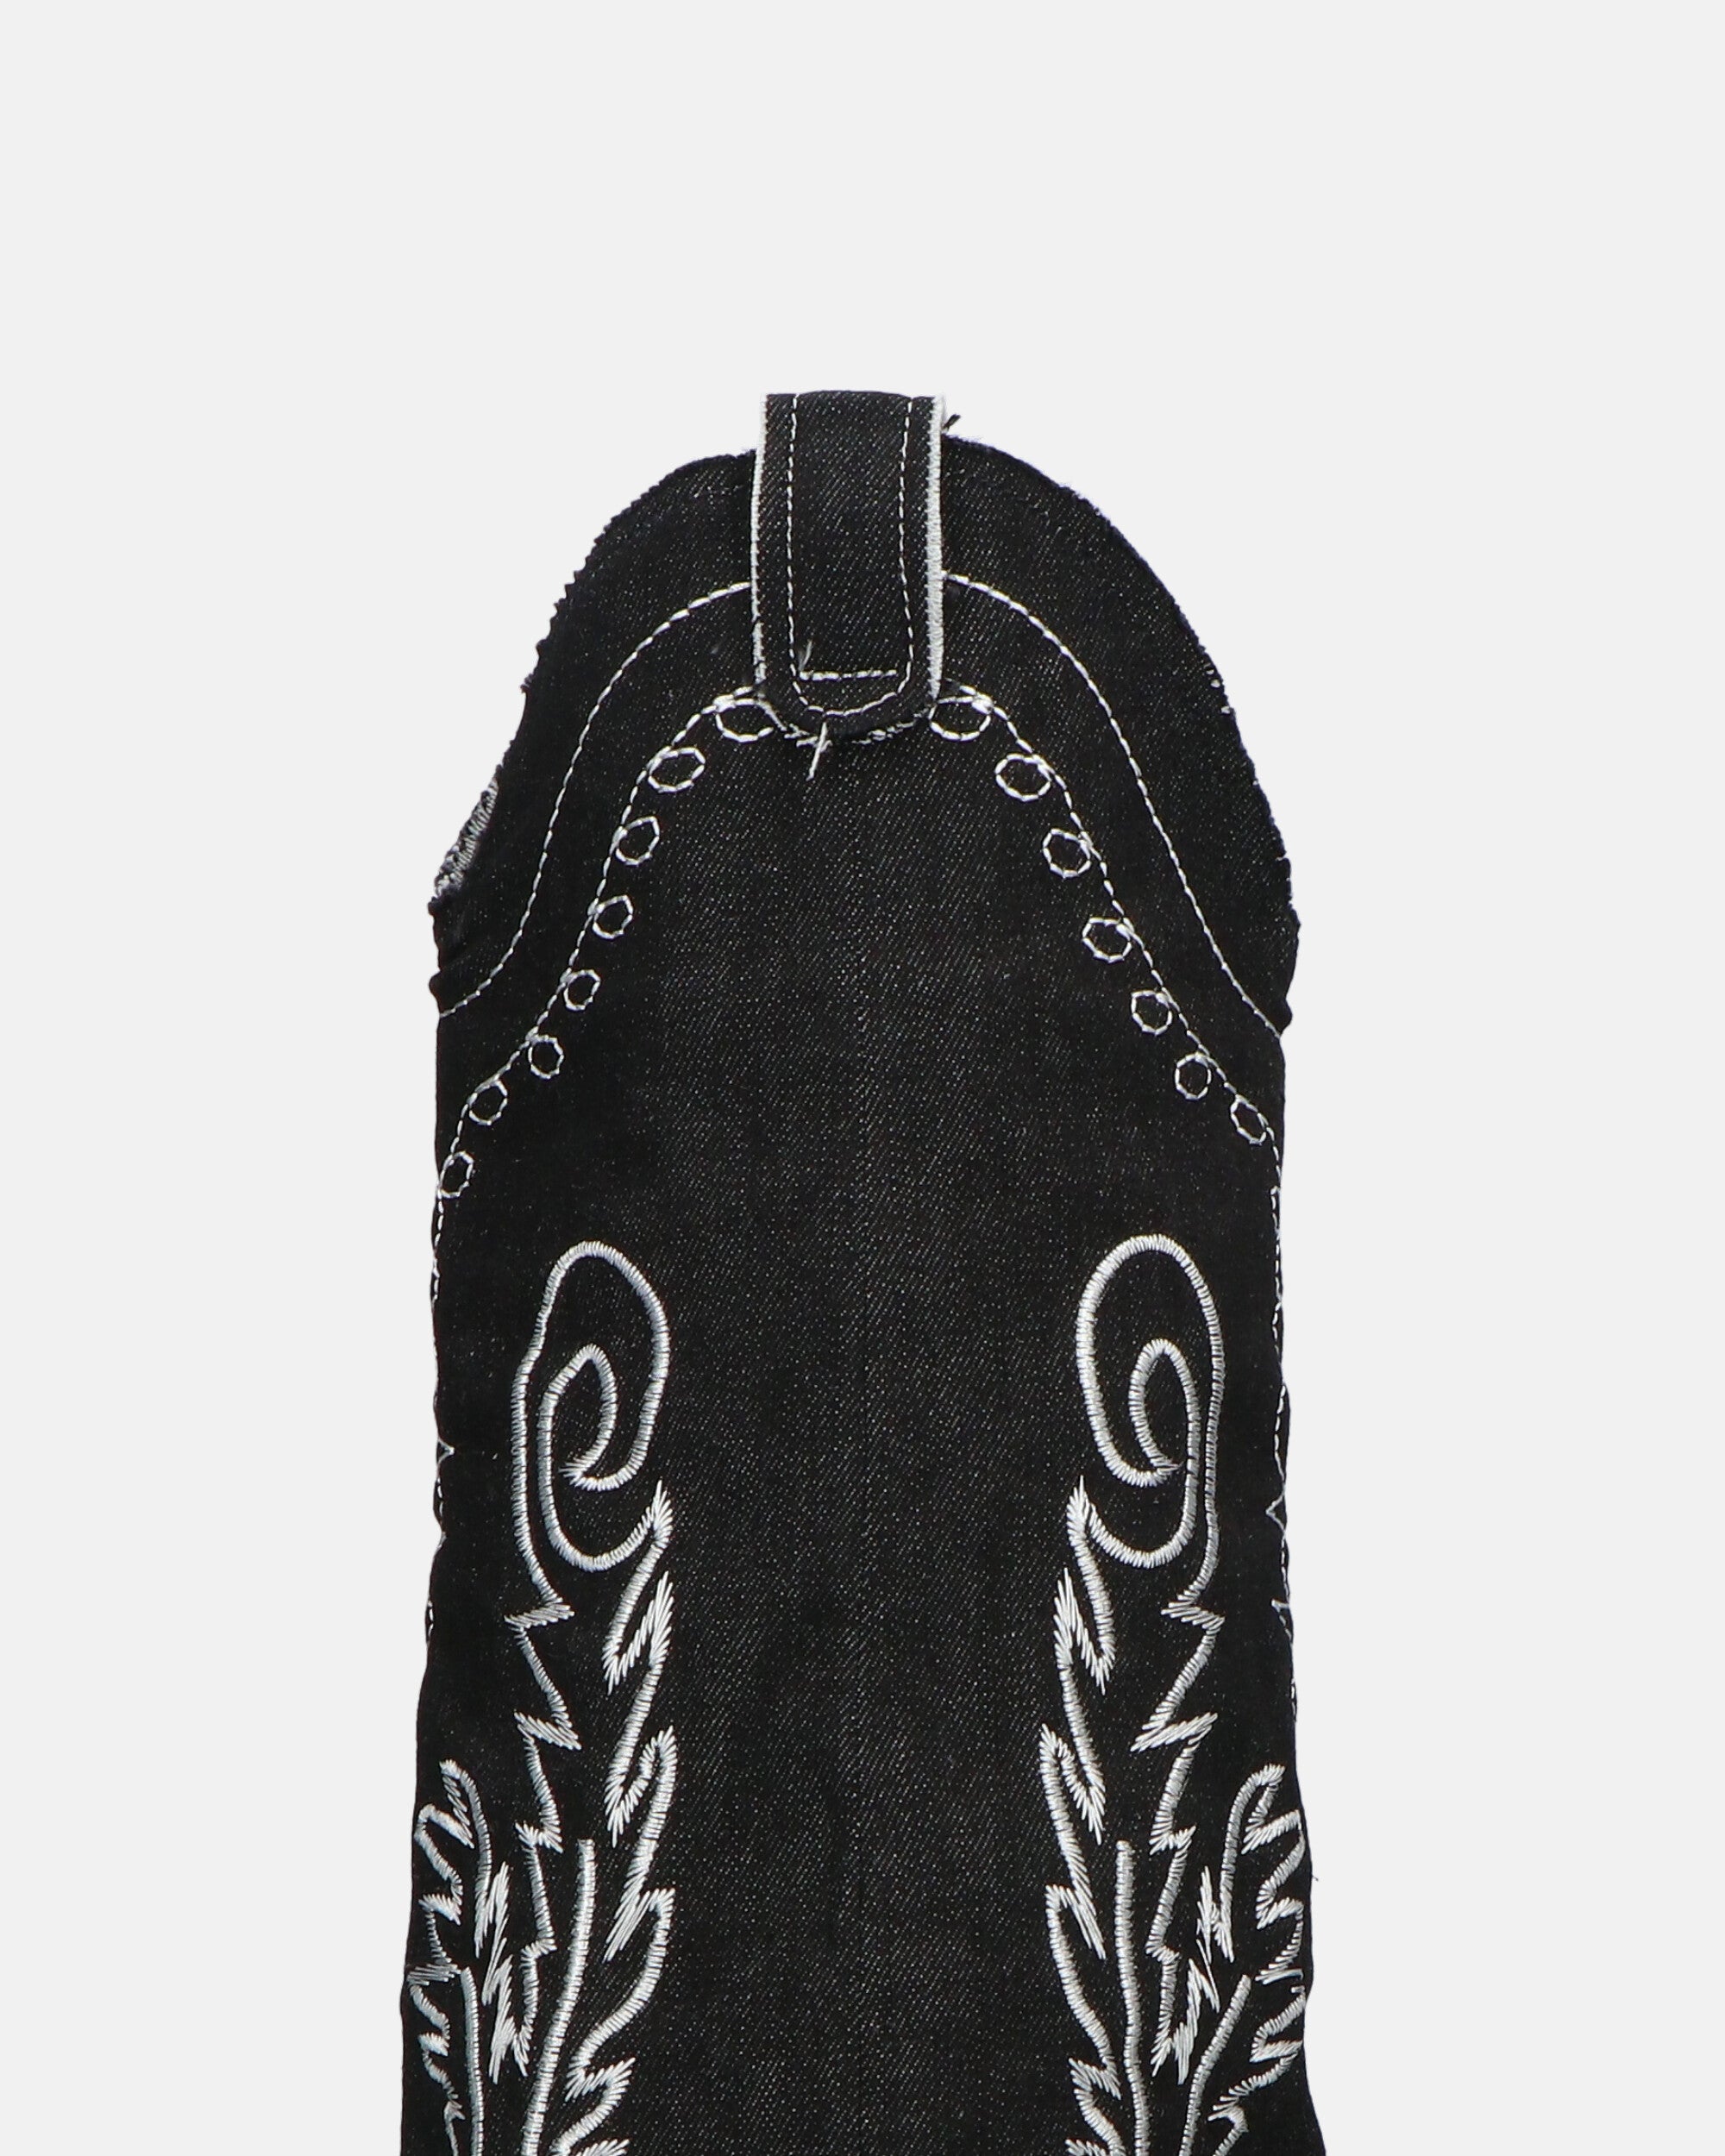 FRANCYS - botas altas camper en tejido denim negro